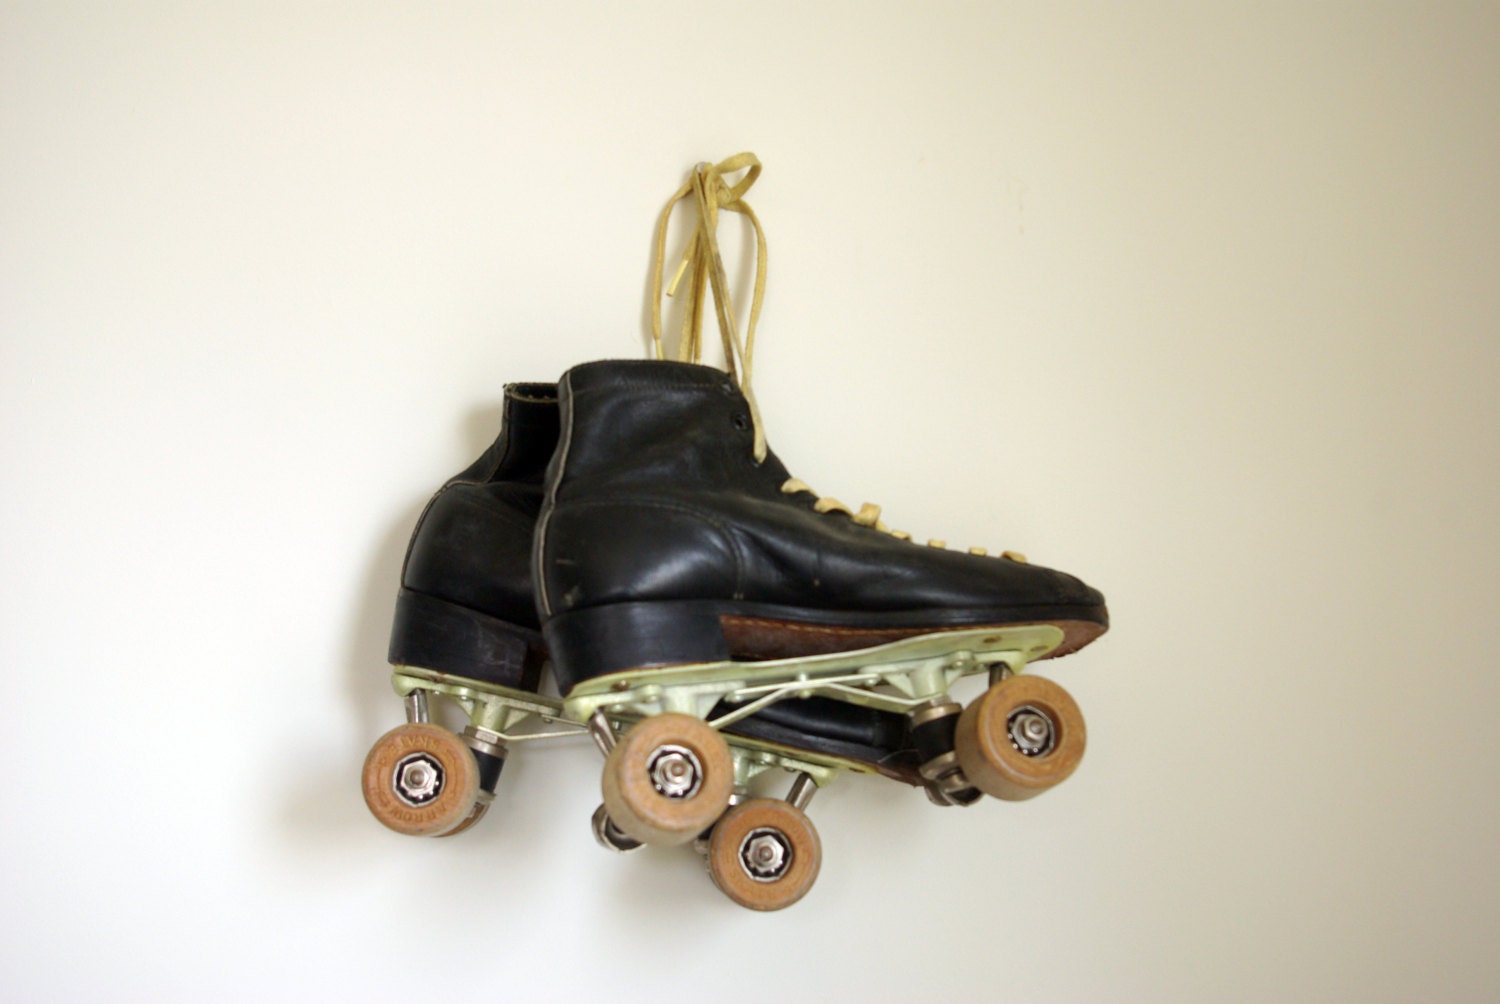 Antique Black Leather Roller Skates, Vintage Home Decor, Games, Sports, Kids Room - VintageRingo